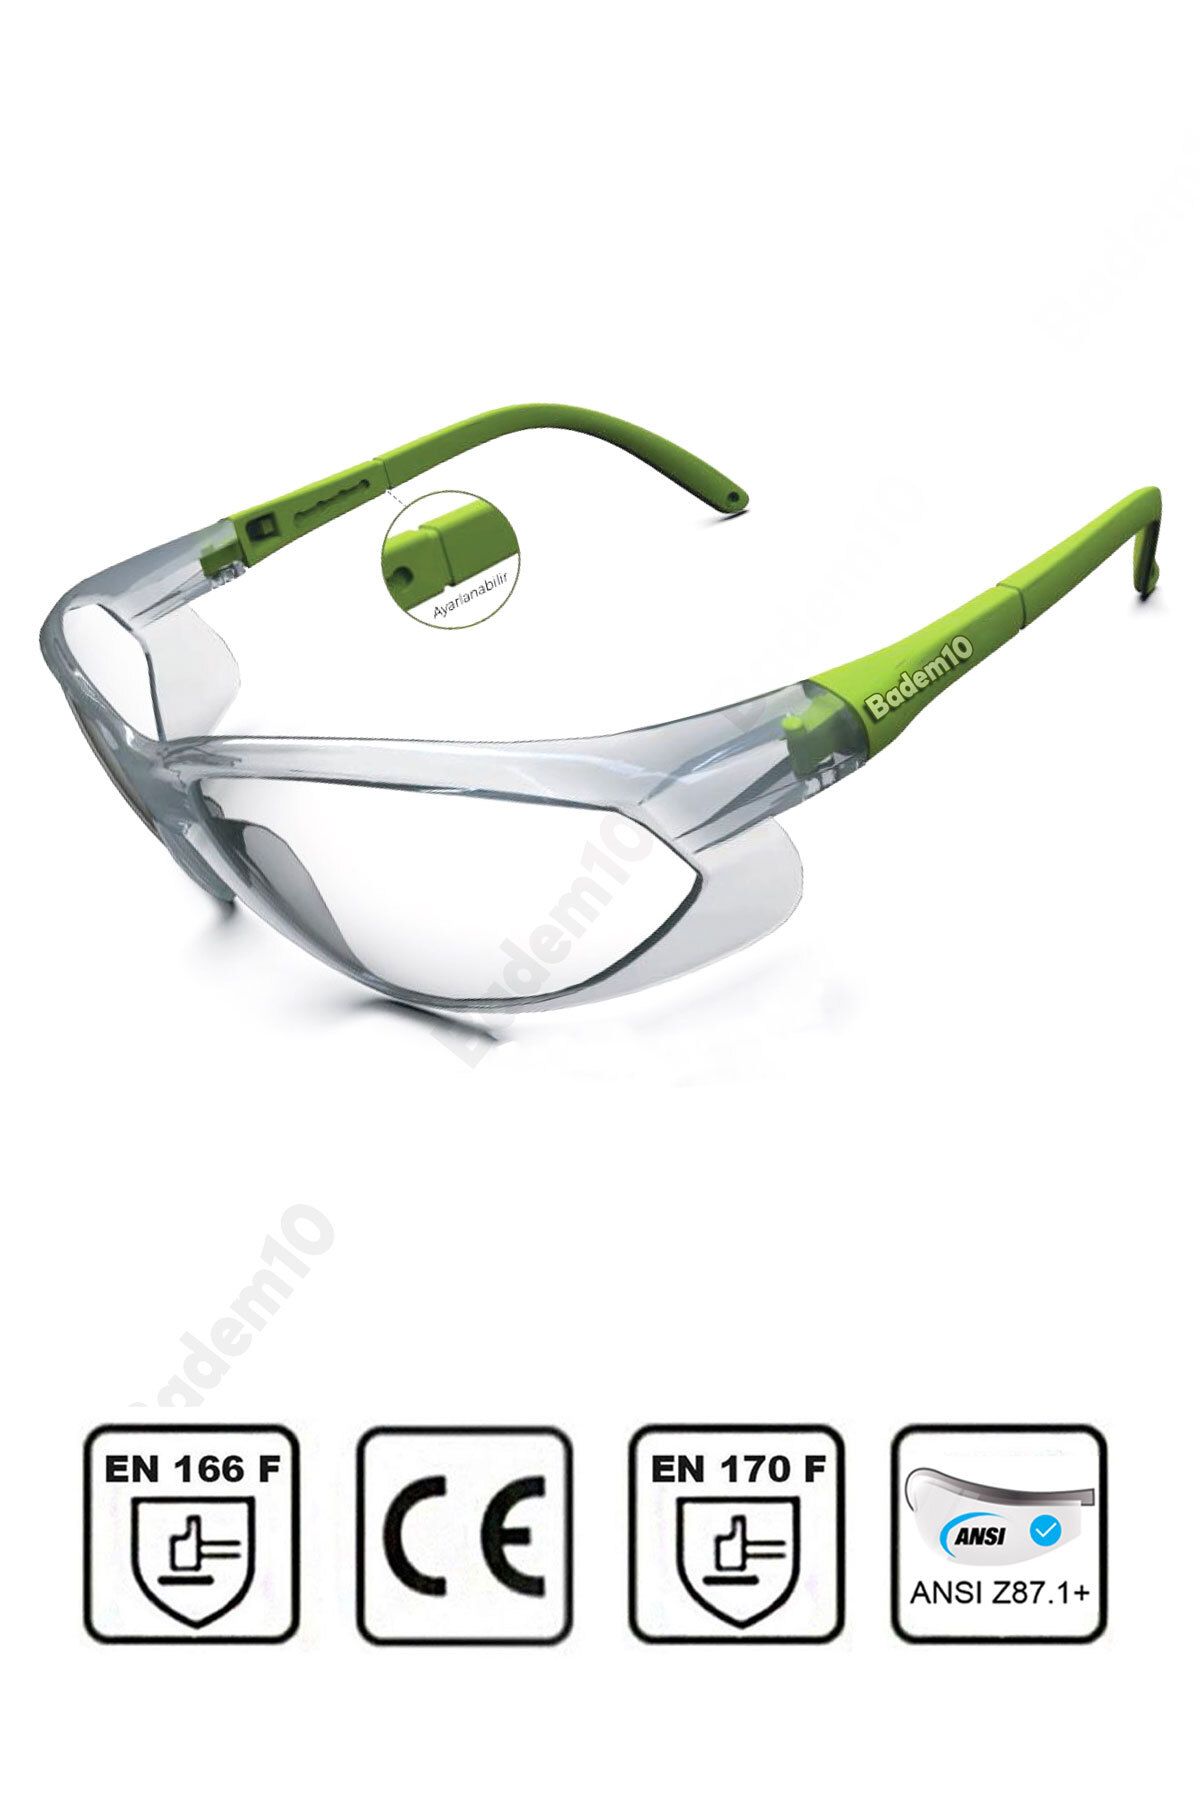 Badem10 Bisiklet Gözlüğü Şeffaf Yüz Ayarlı Motorcu Rüzgar Korumalı Gözlük Yeşil Saplı Uv Koruyucu